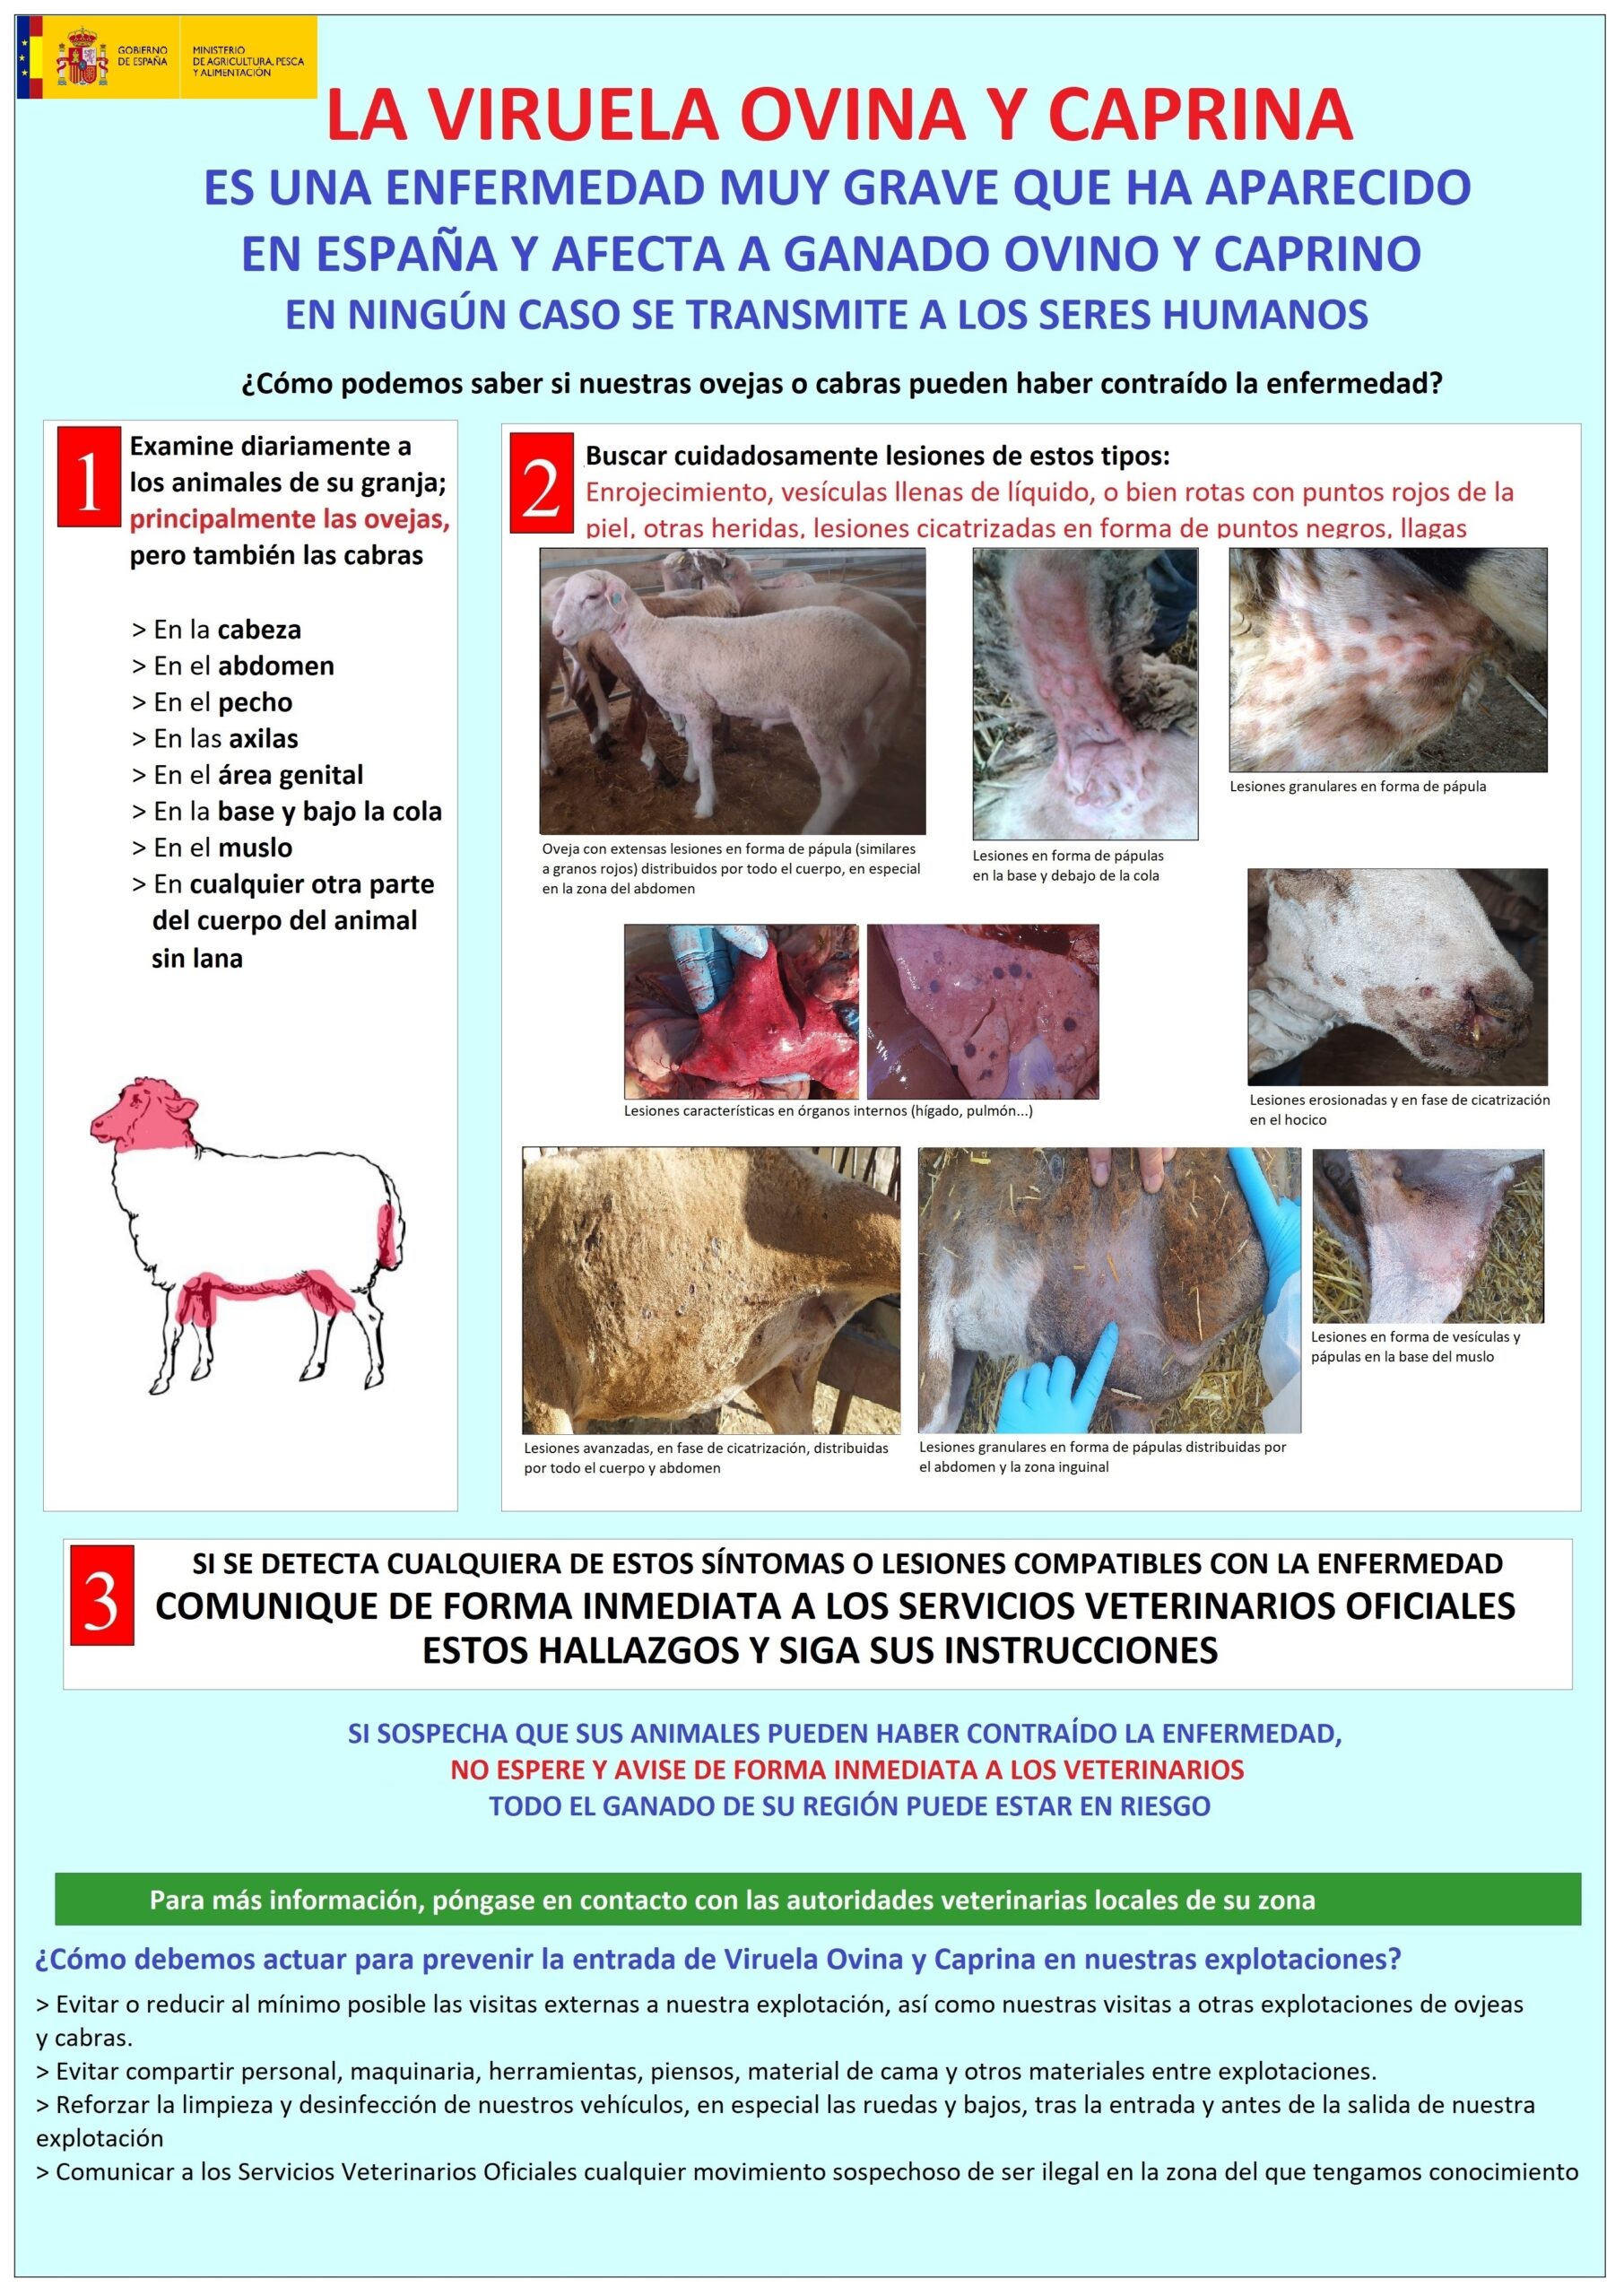 Virus de la viruela en ovejas y cabras: características del patógeno, medidas de control y prevención.